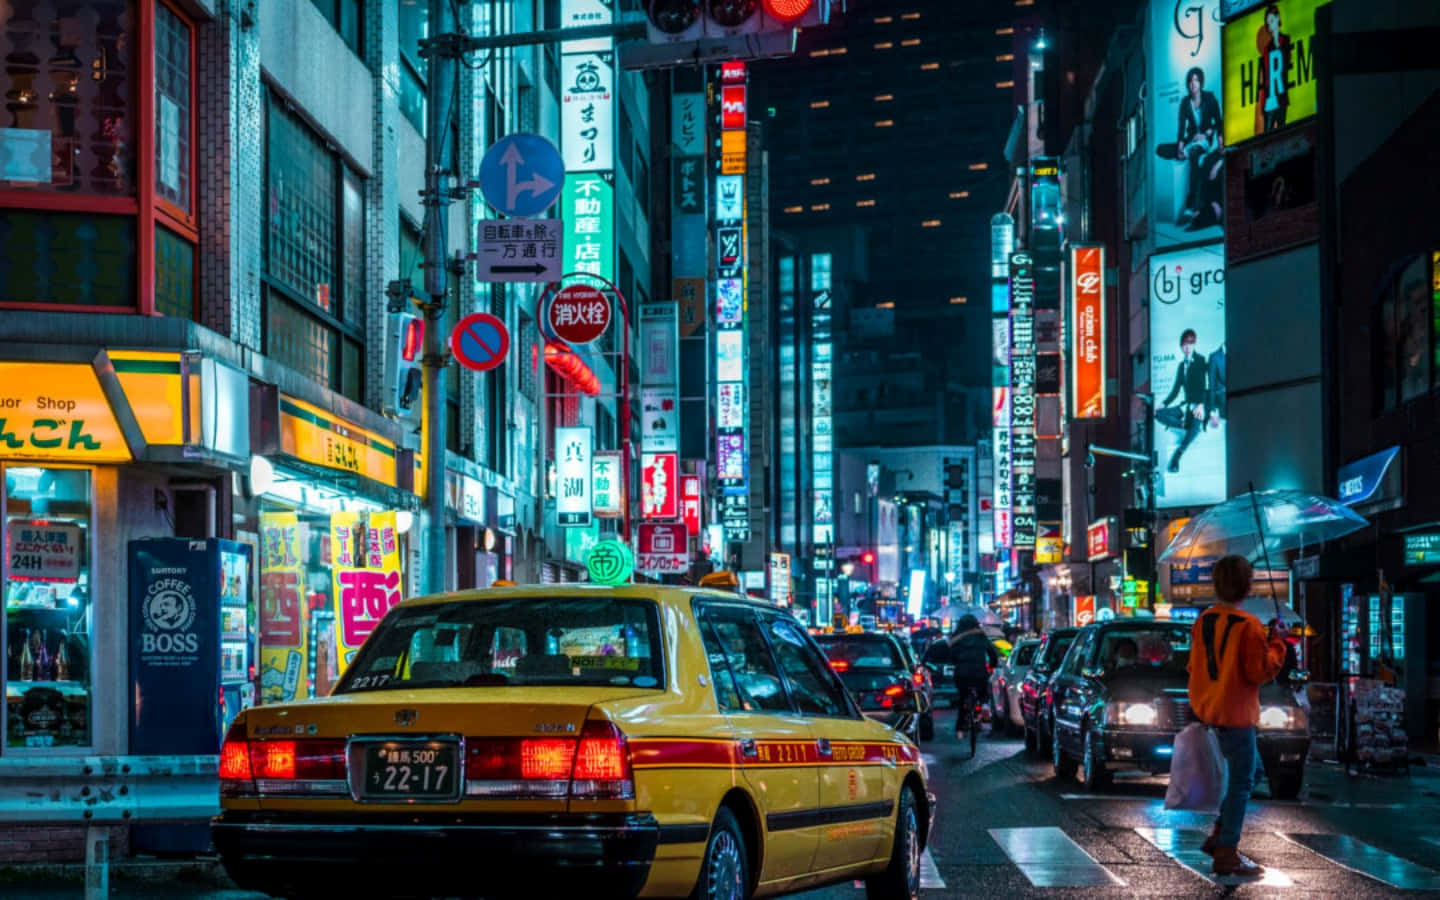 Tokyo After Dark